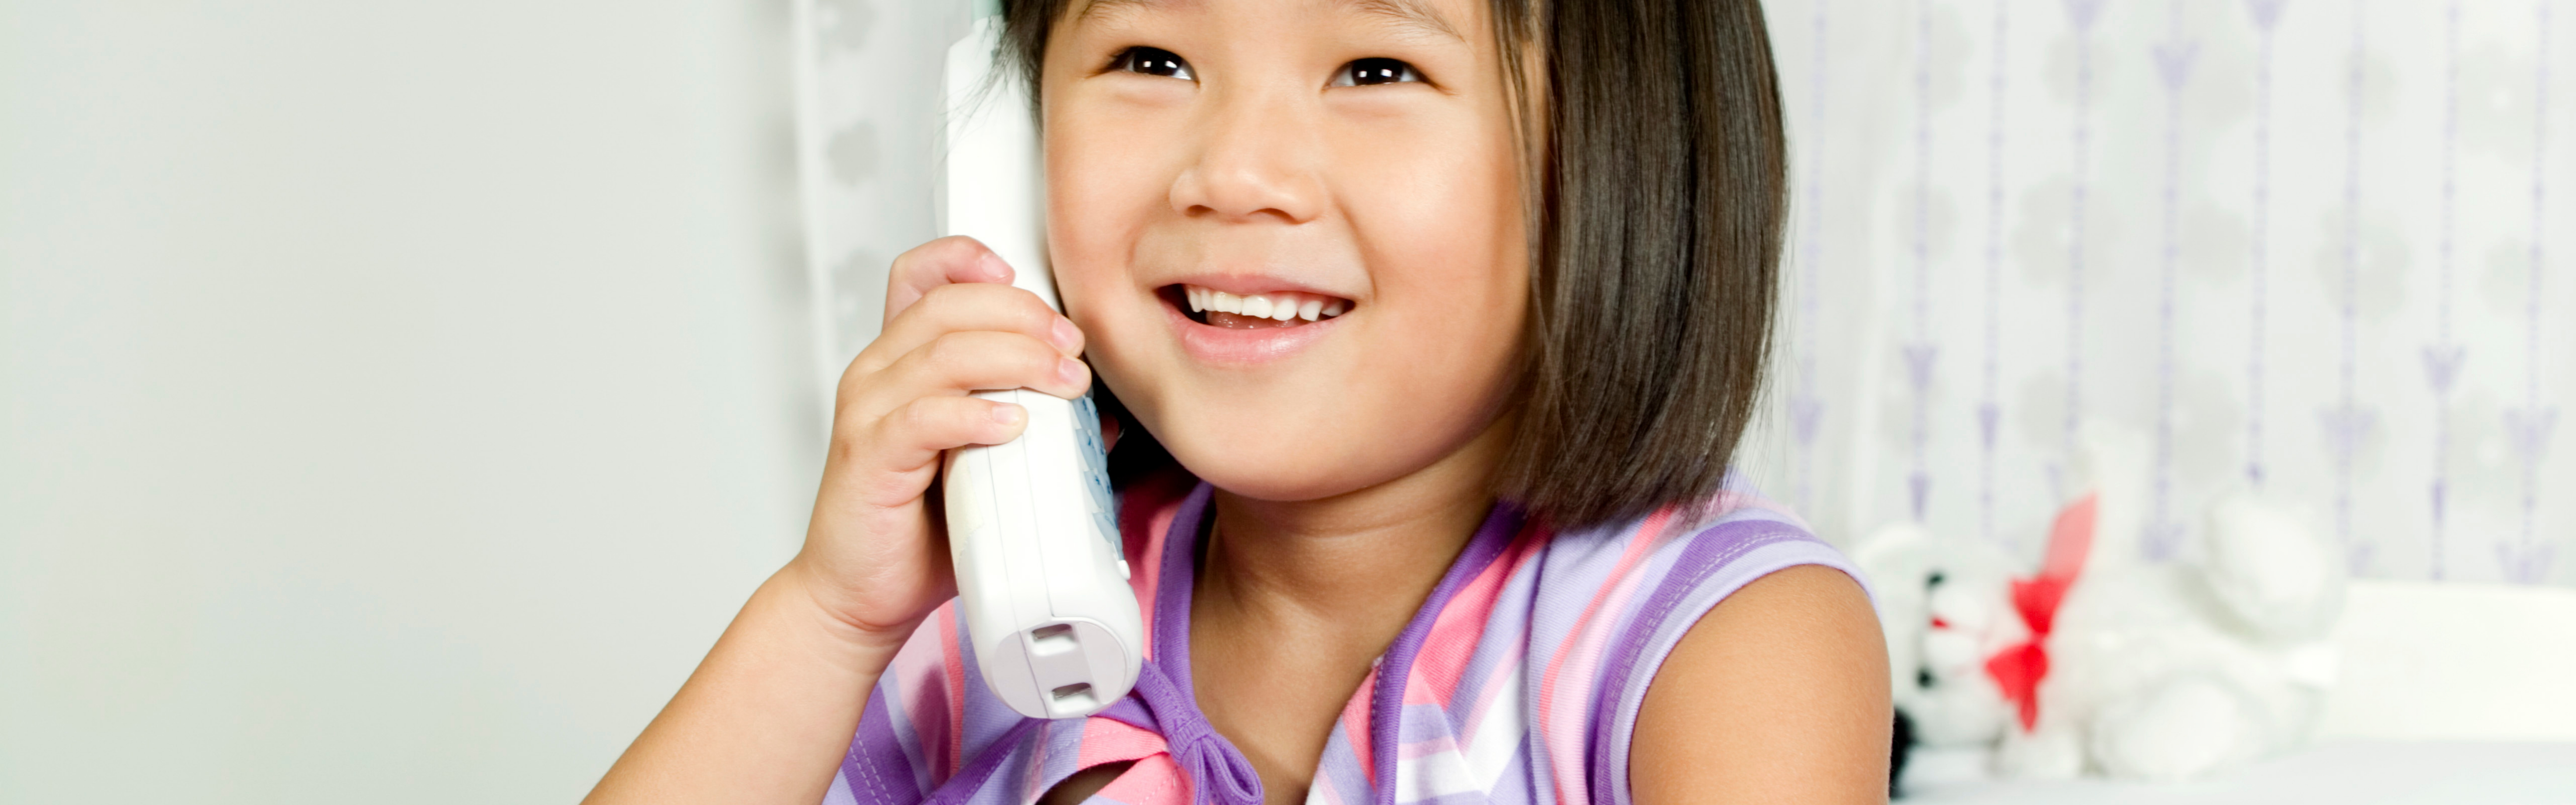 Little girl using phone